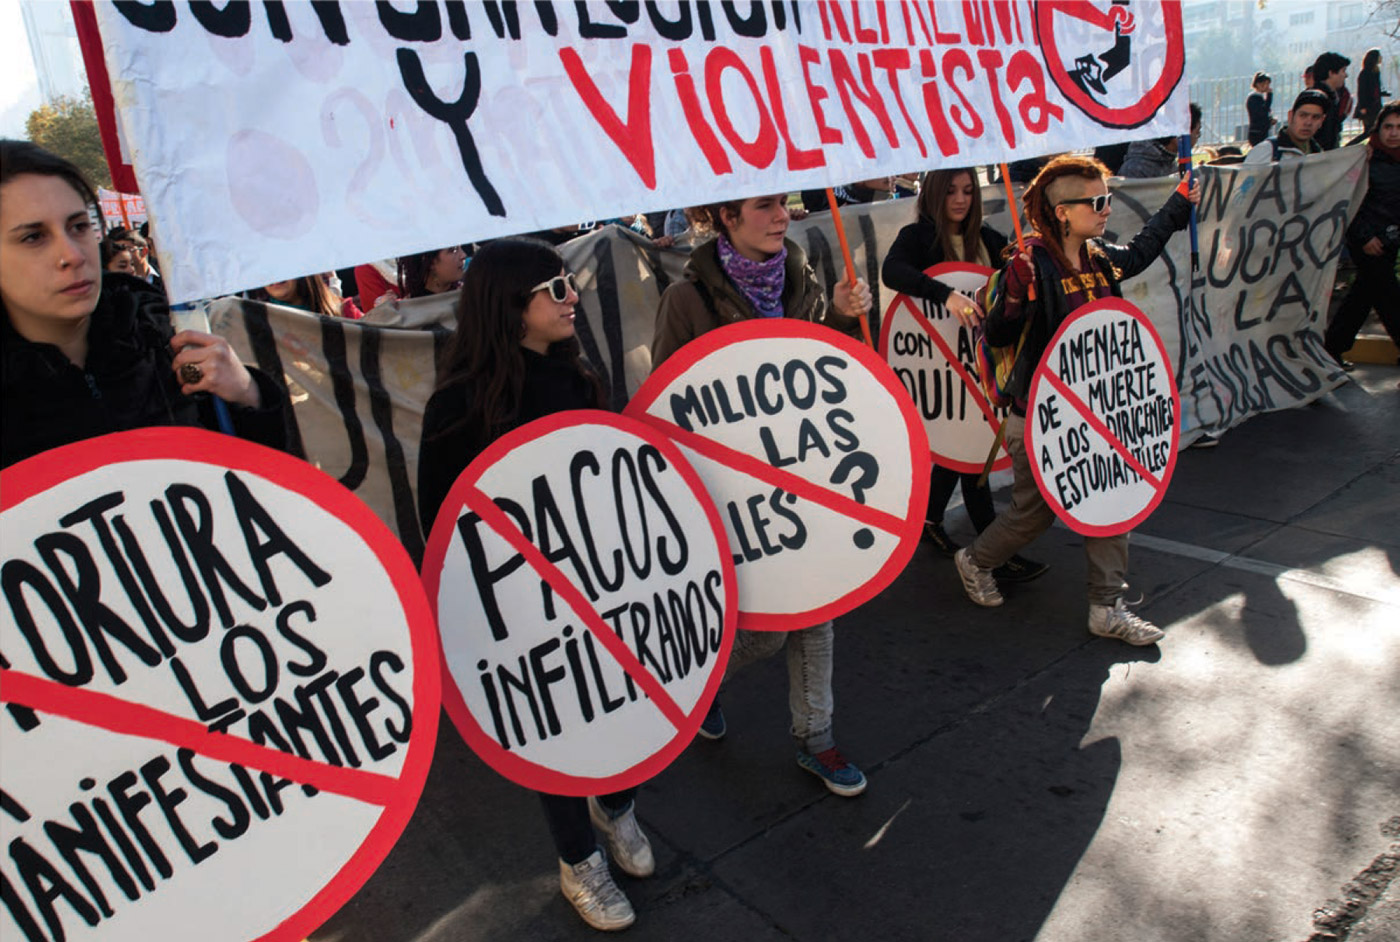 Marcha estudiantil exigiendo educación gratuita y de calidad. Santiago de Chile, Chile. 2011.